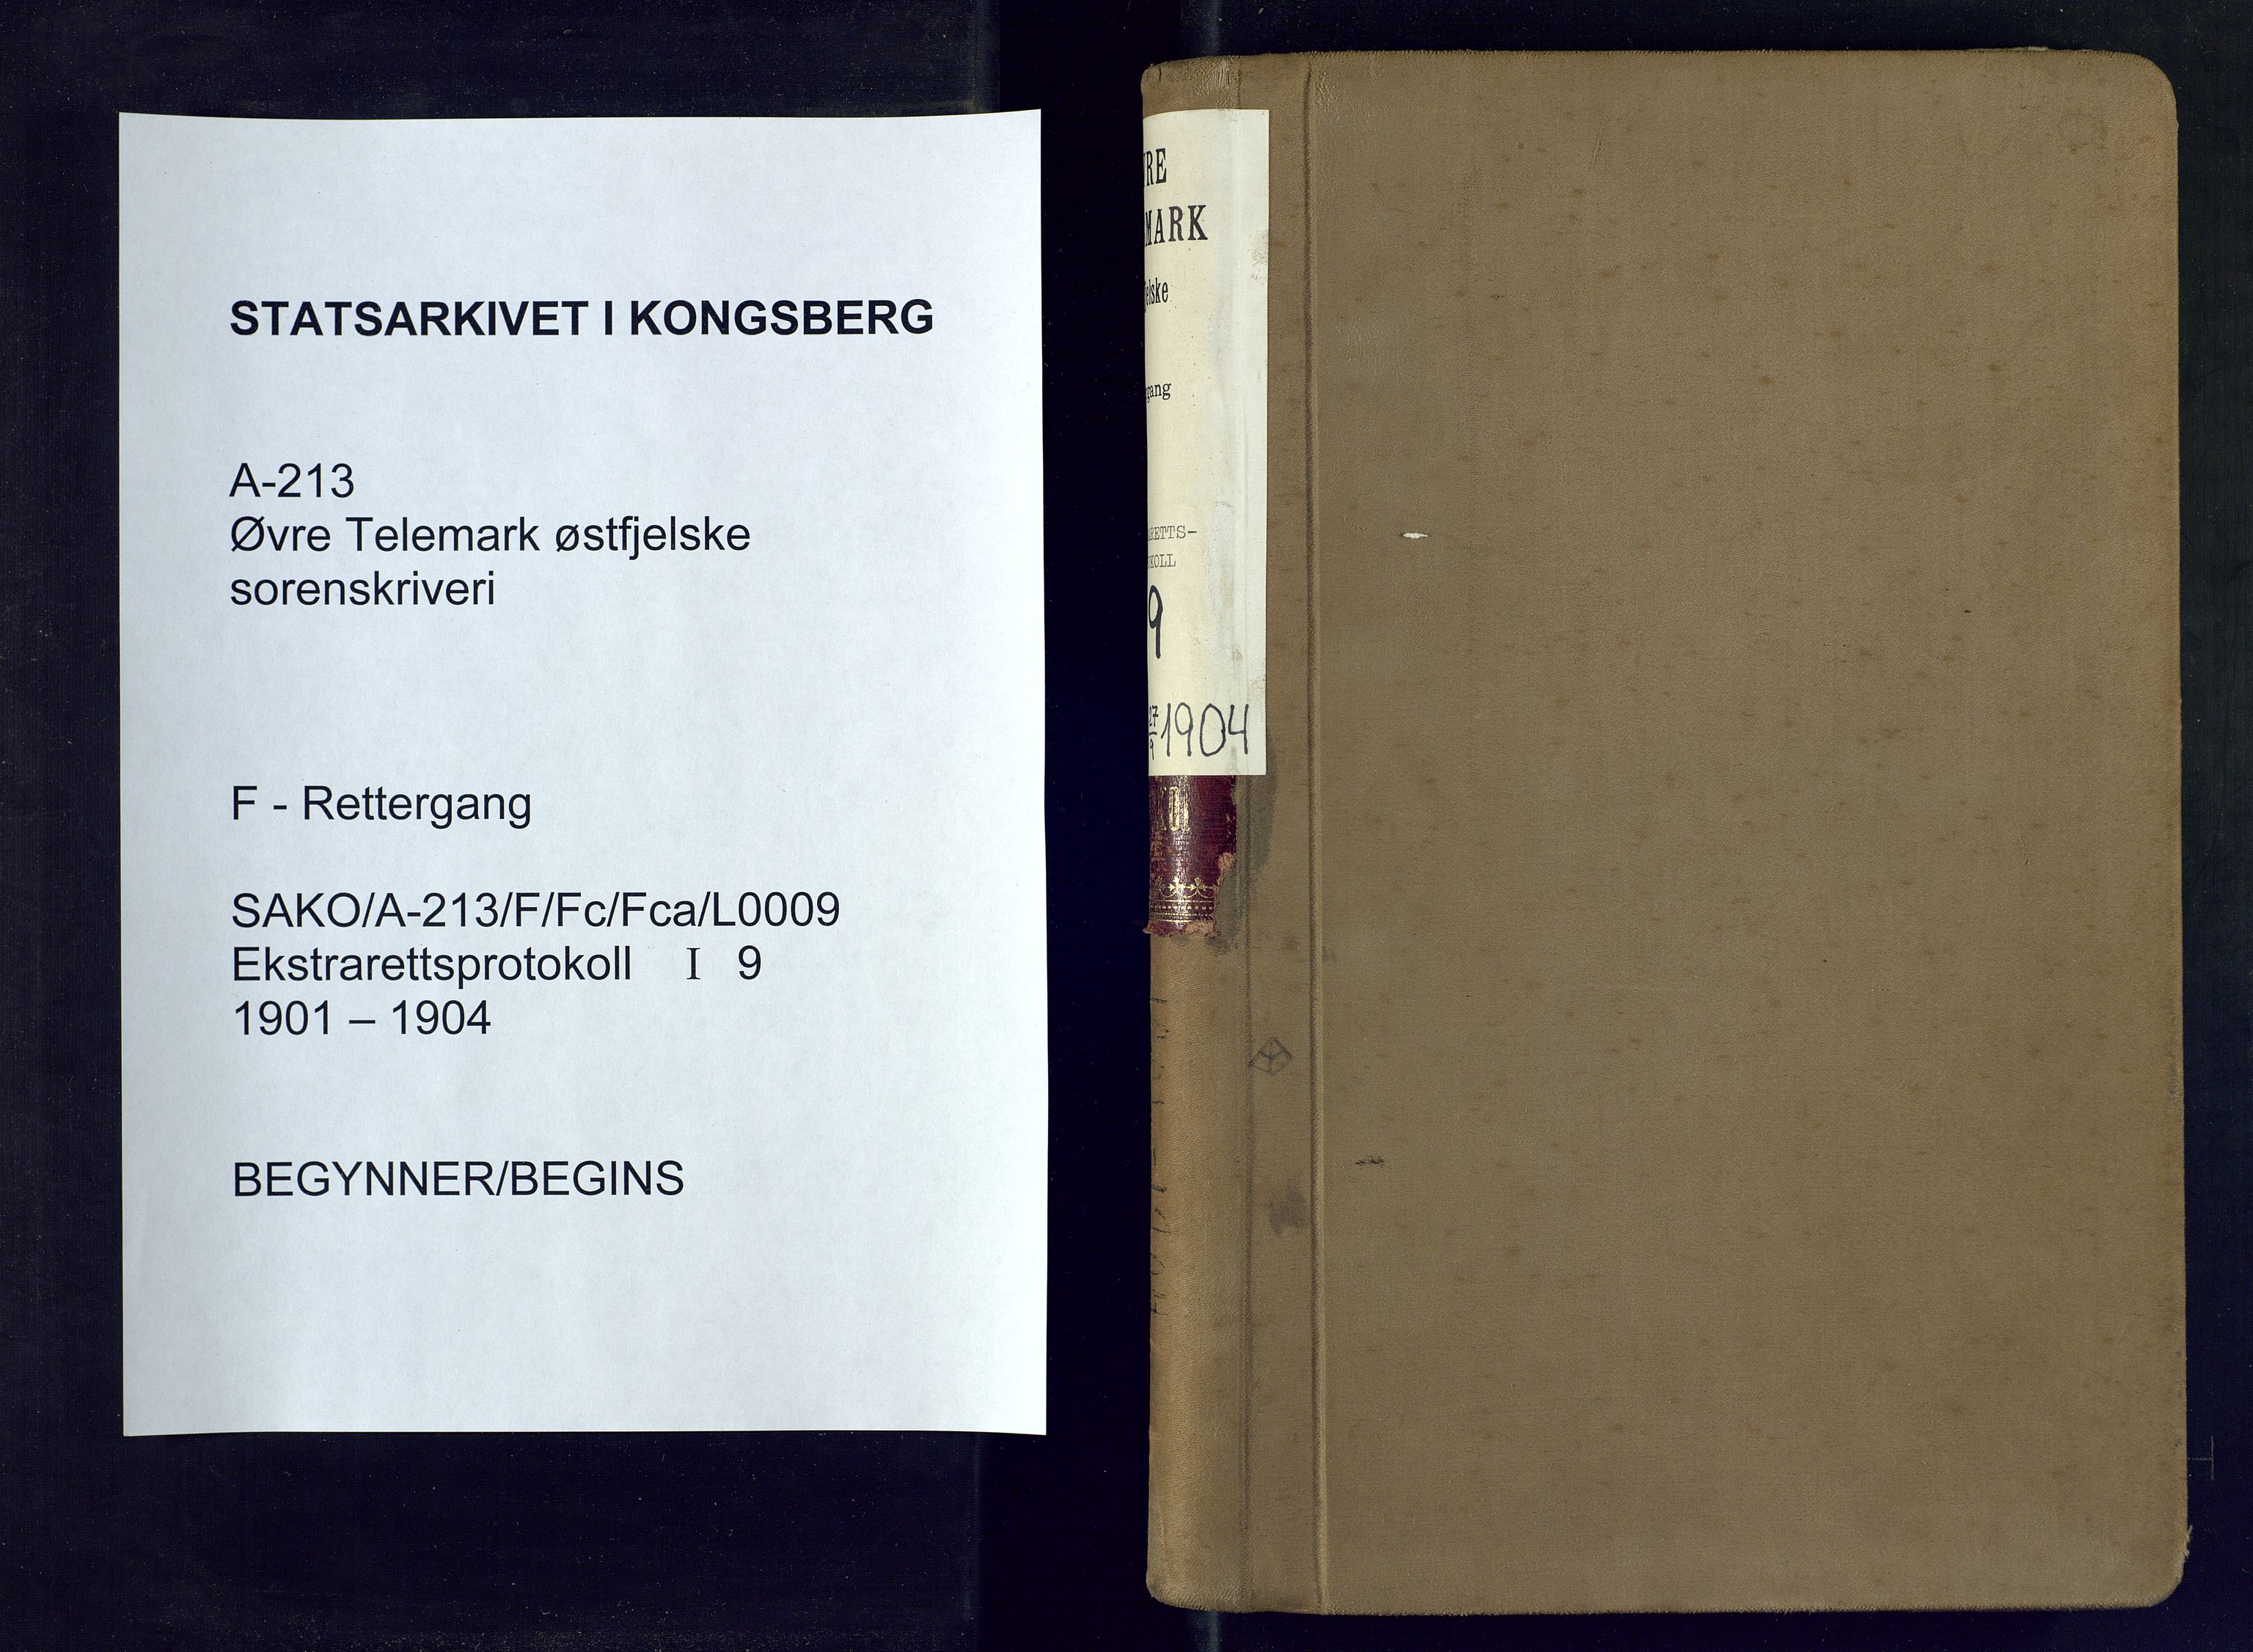 Øvre Telemark østfjelske sorenskriveri, SAKO/A-213/F/Fc/Fca/L0009: Ekstrarettsprotokoll, sivile saker, 1901-1904